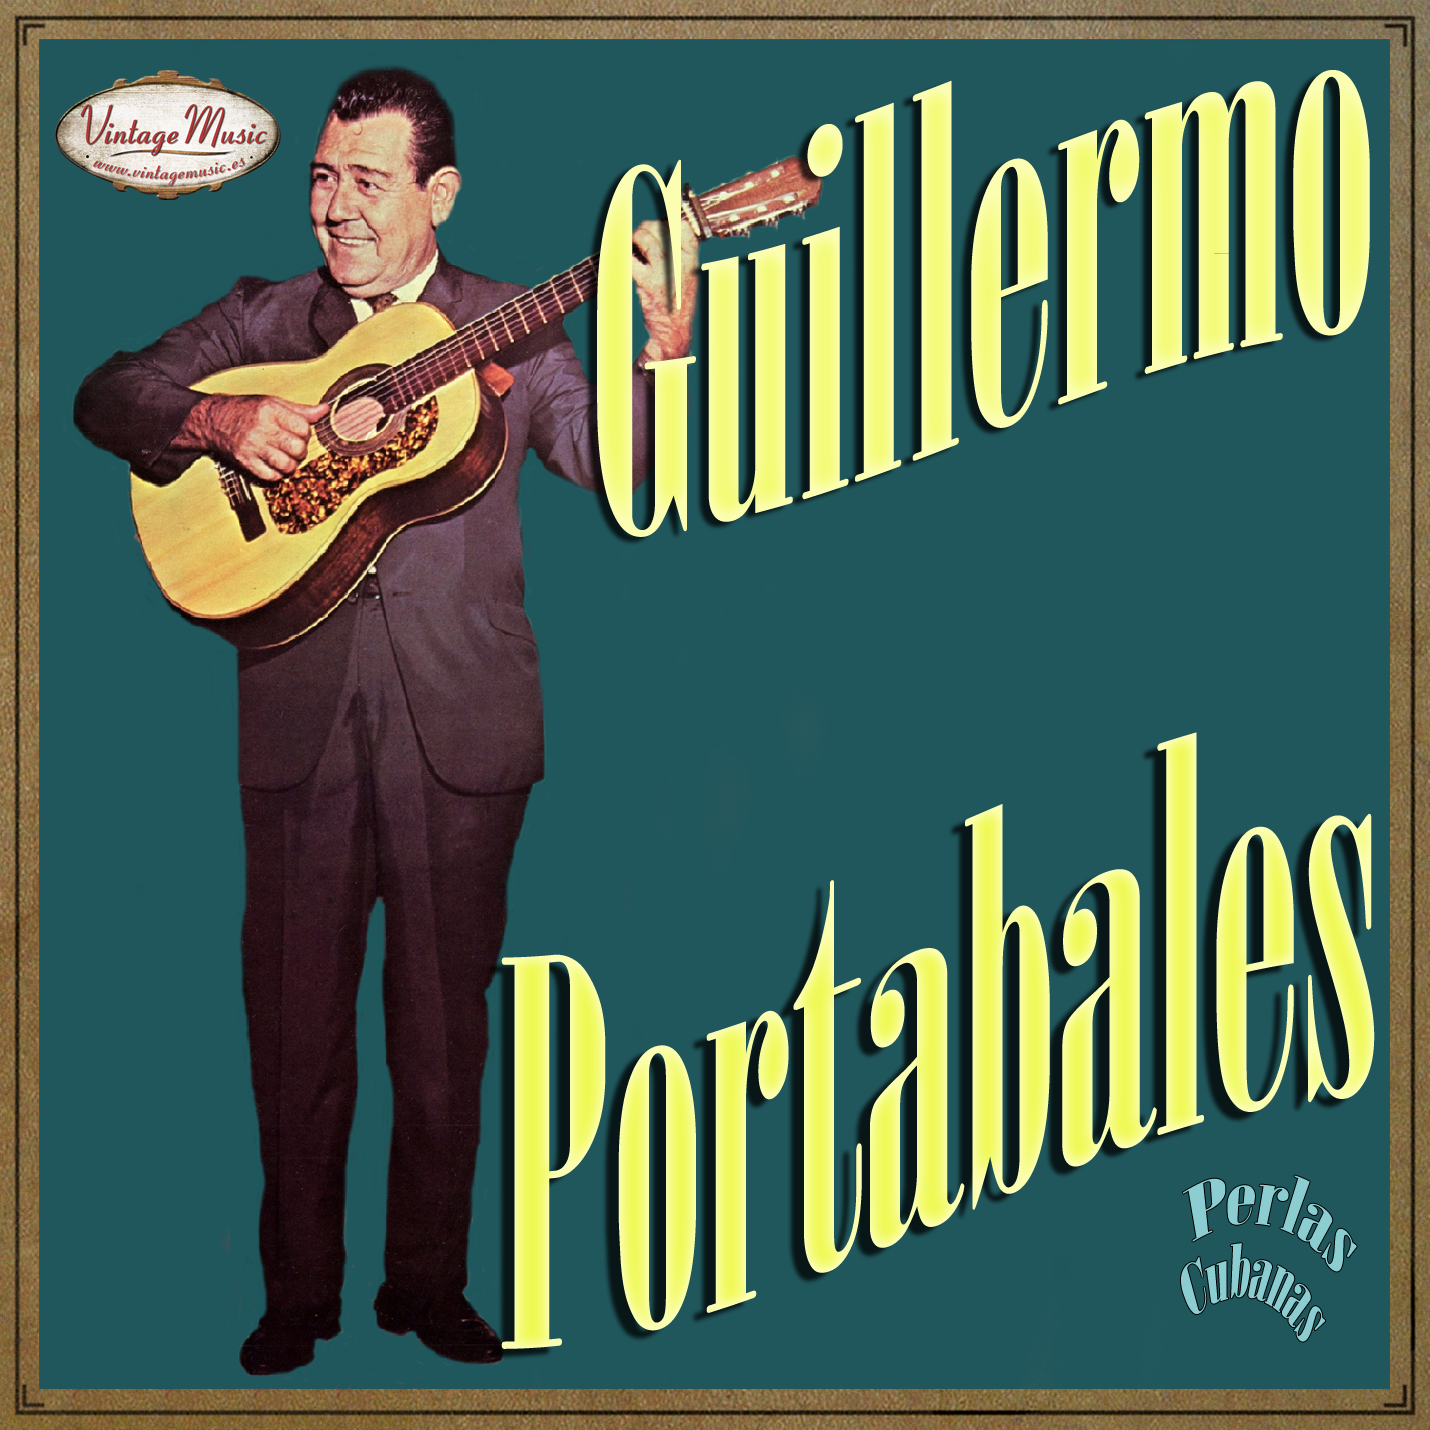 Guillermo Portabales (Colección Perlas Cubanas - #126)